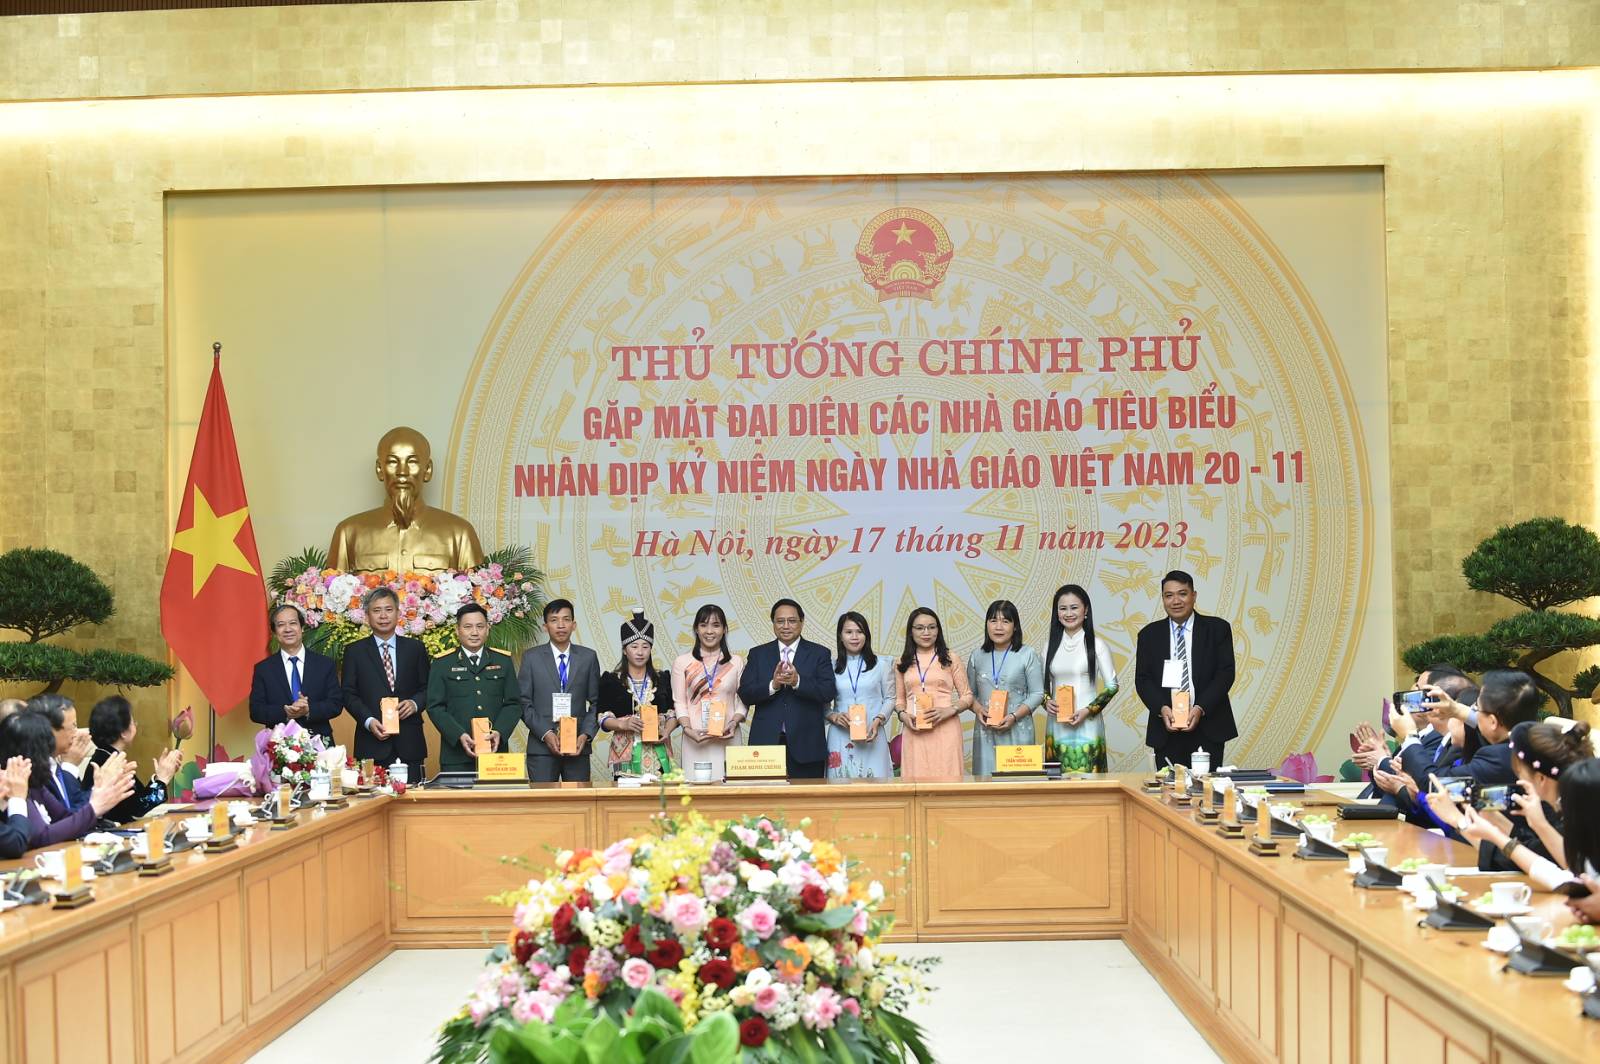 Thủ tướng tặng quà đại diện các nhà giáo tiêu biểu - Ảnh: VGP/Quang Thương